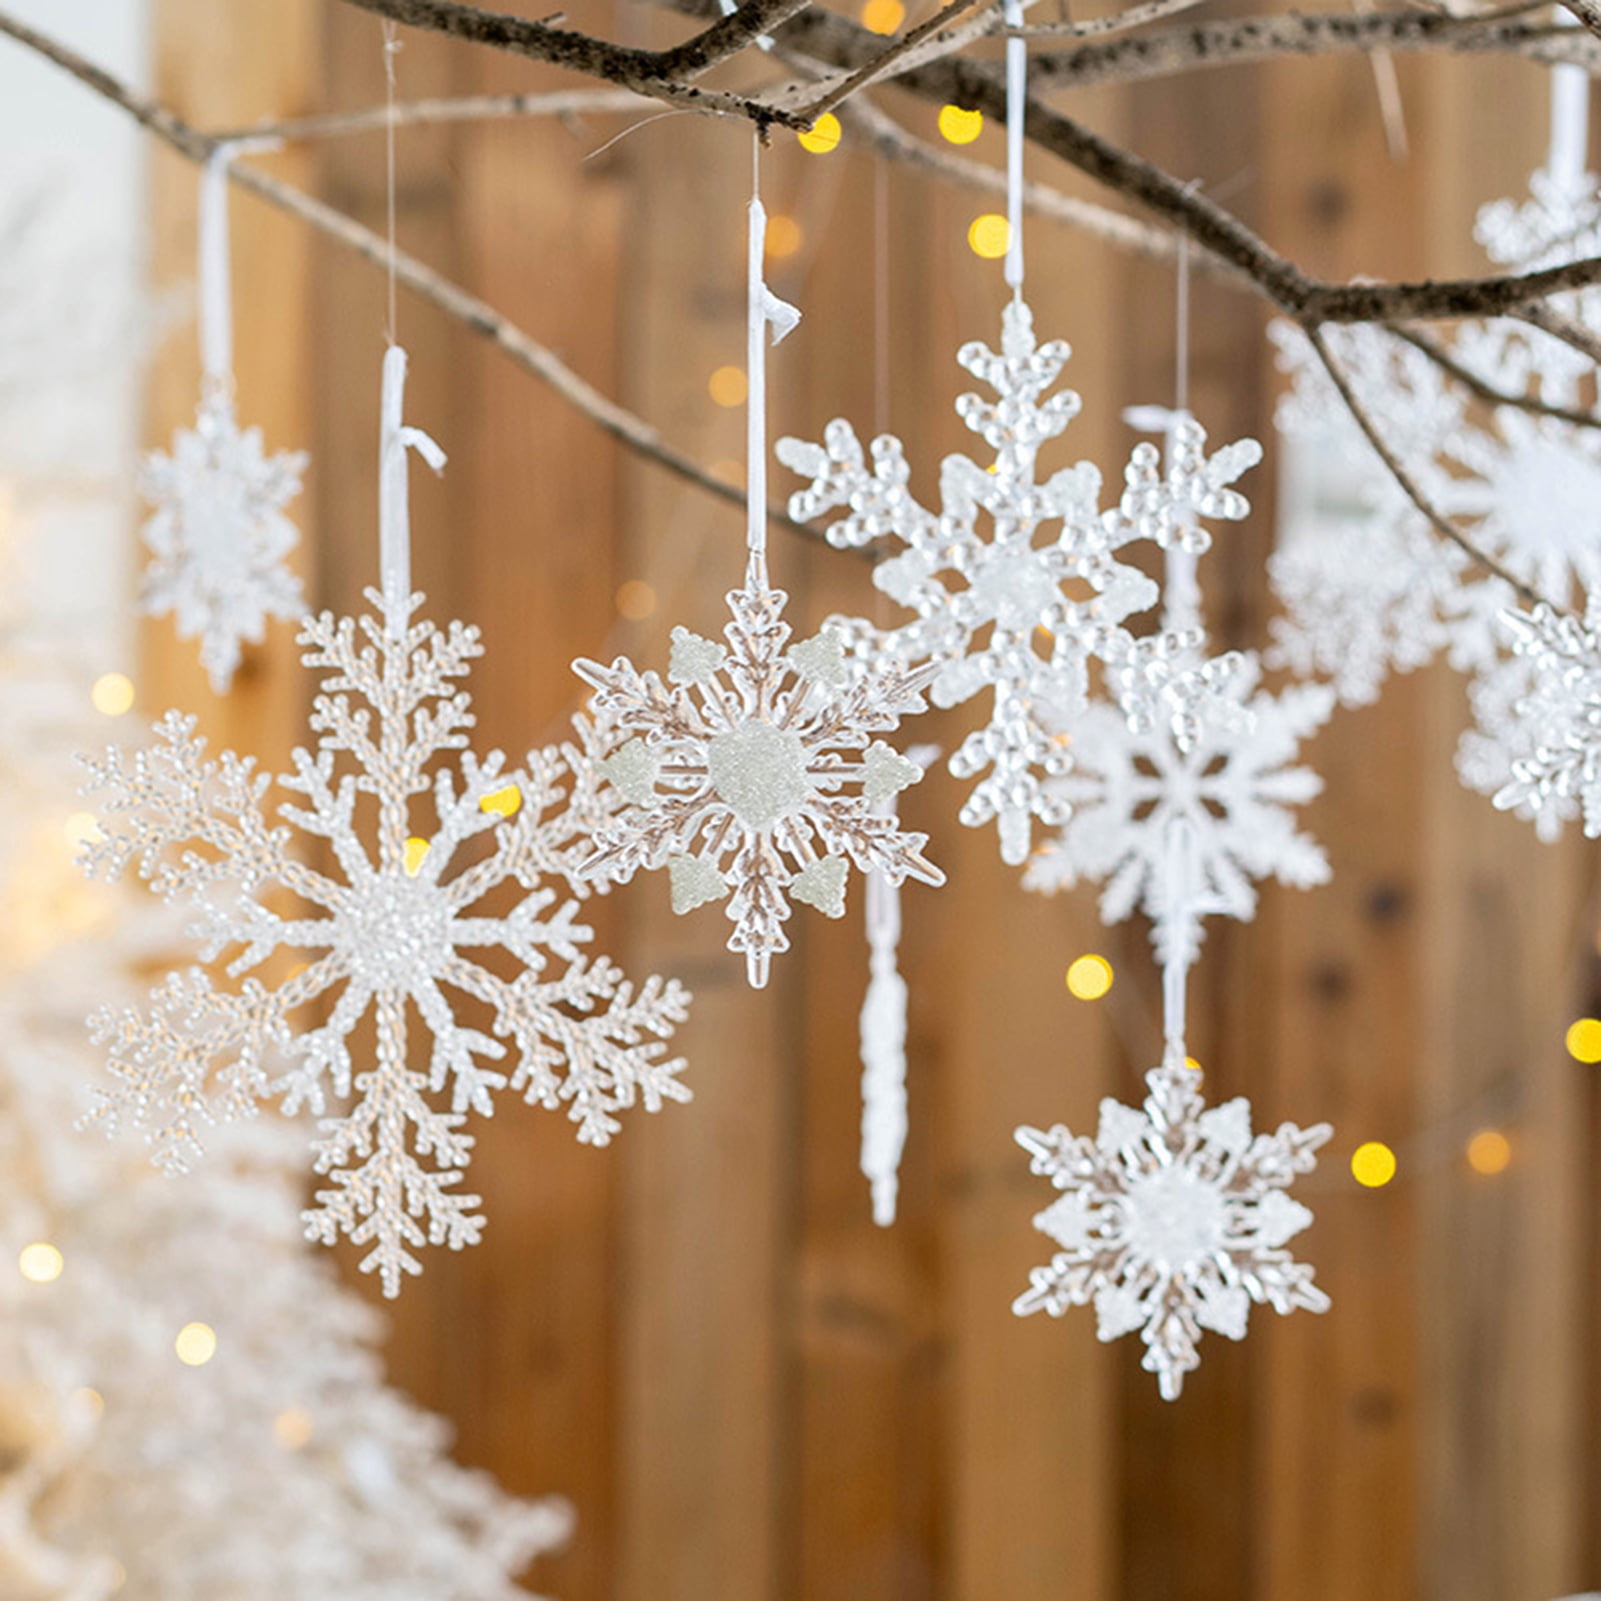 DIY Holiday Decorating – Falling Snowflakes